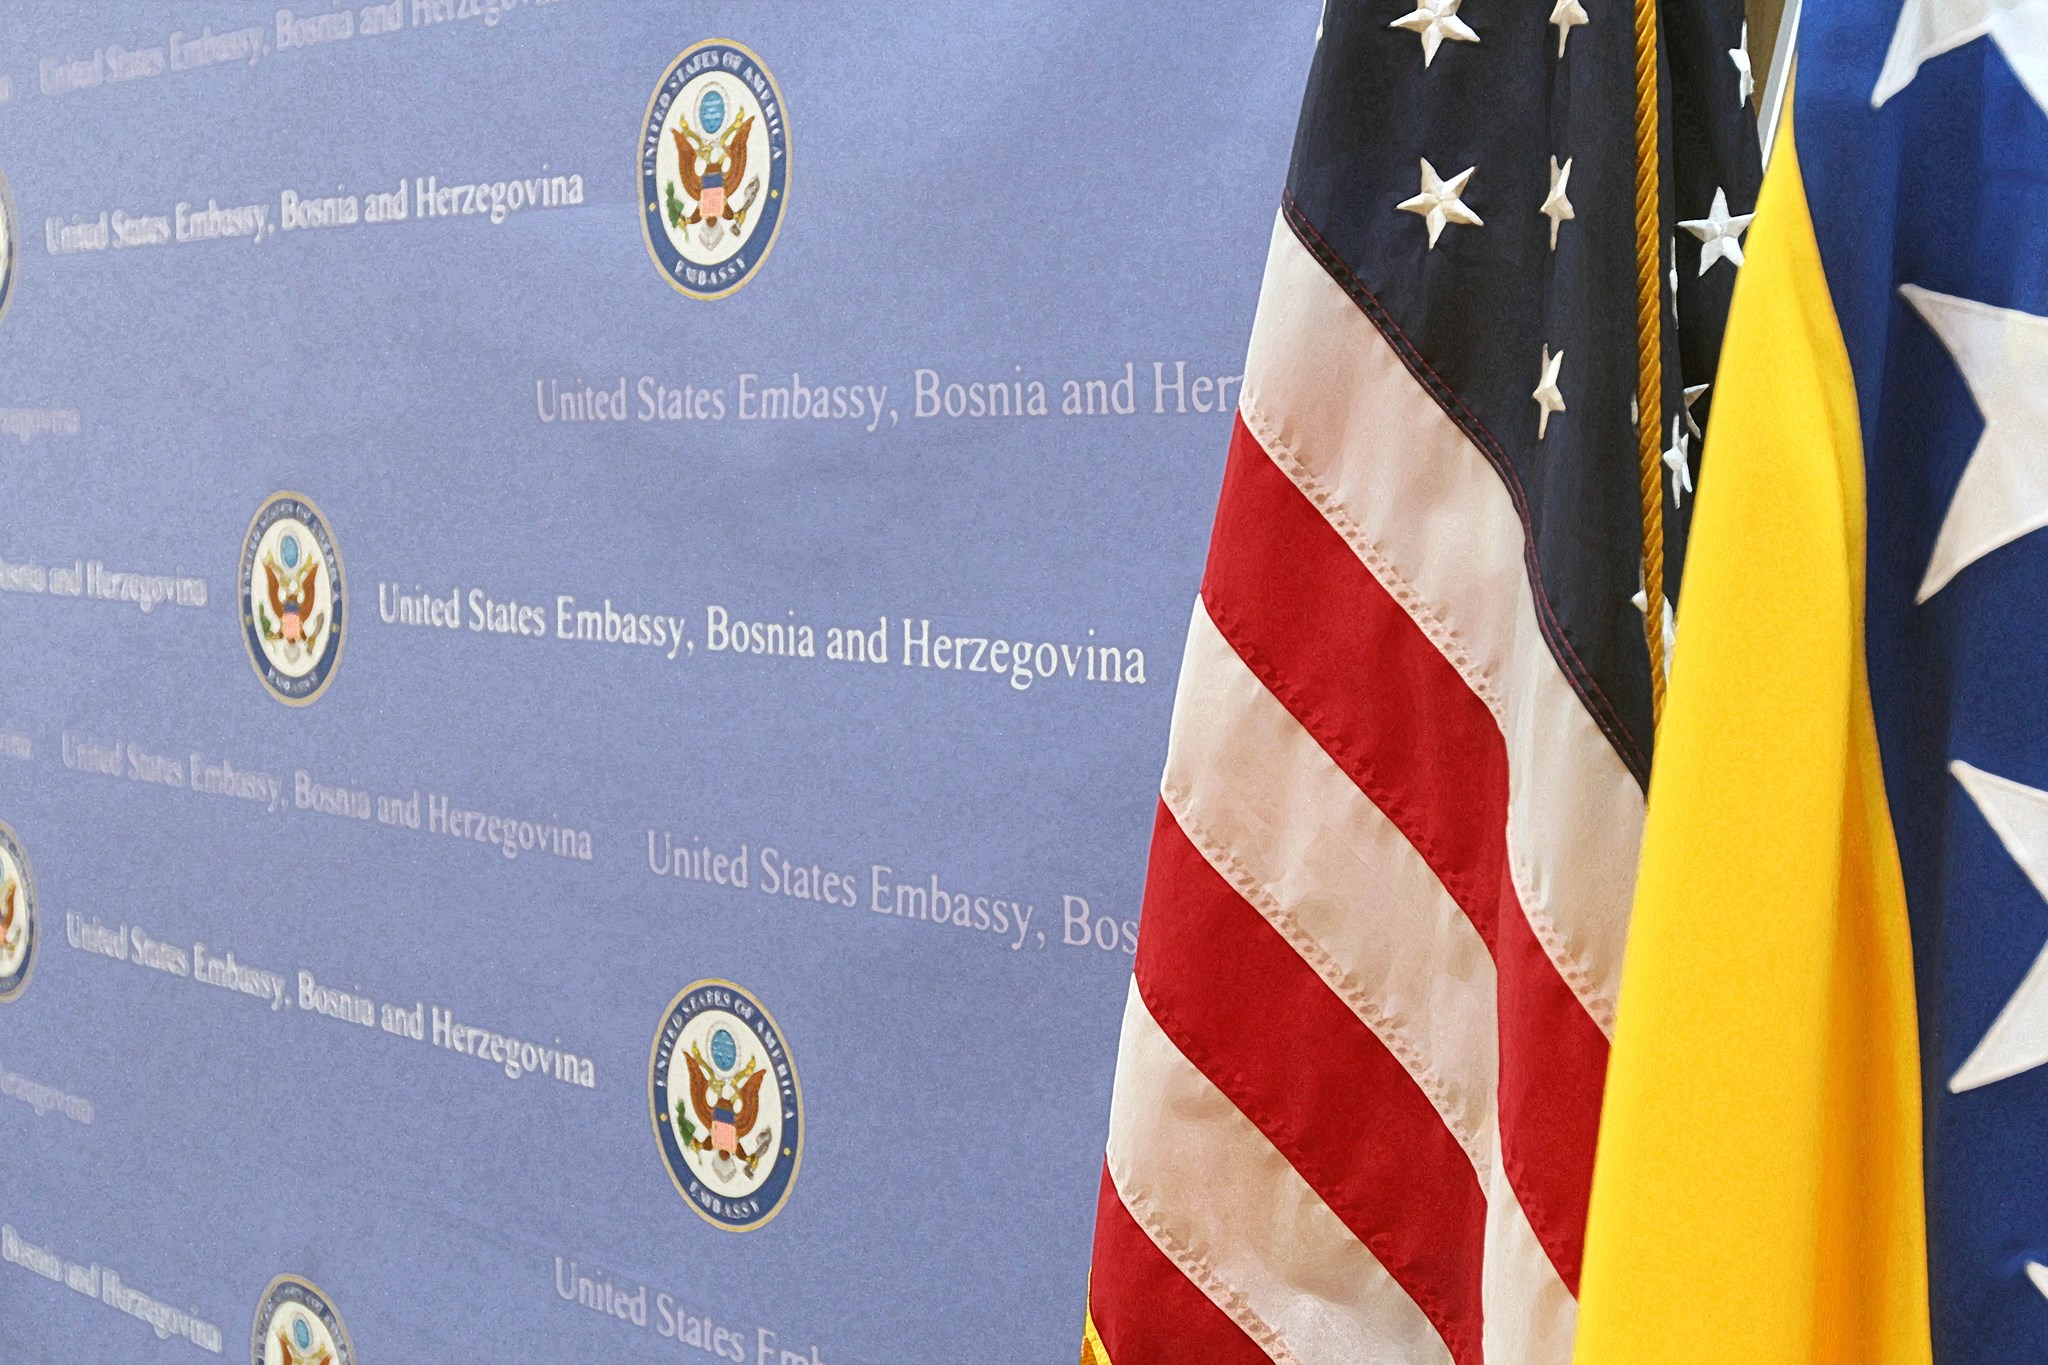 Američka ambasada u Sarajevu osudila Kordićevu izjavu: Institucije moraju reagovati